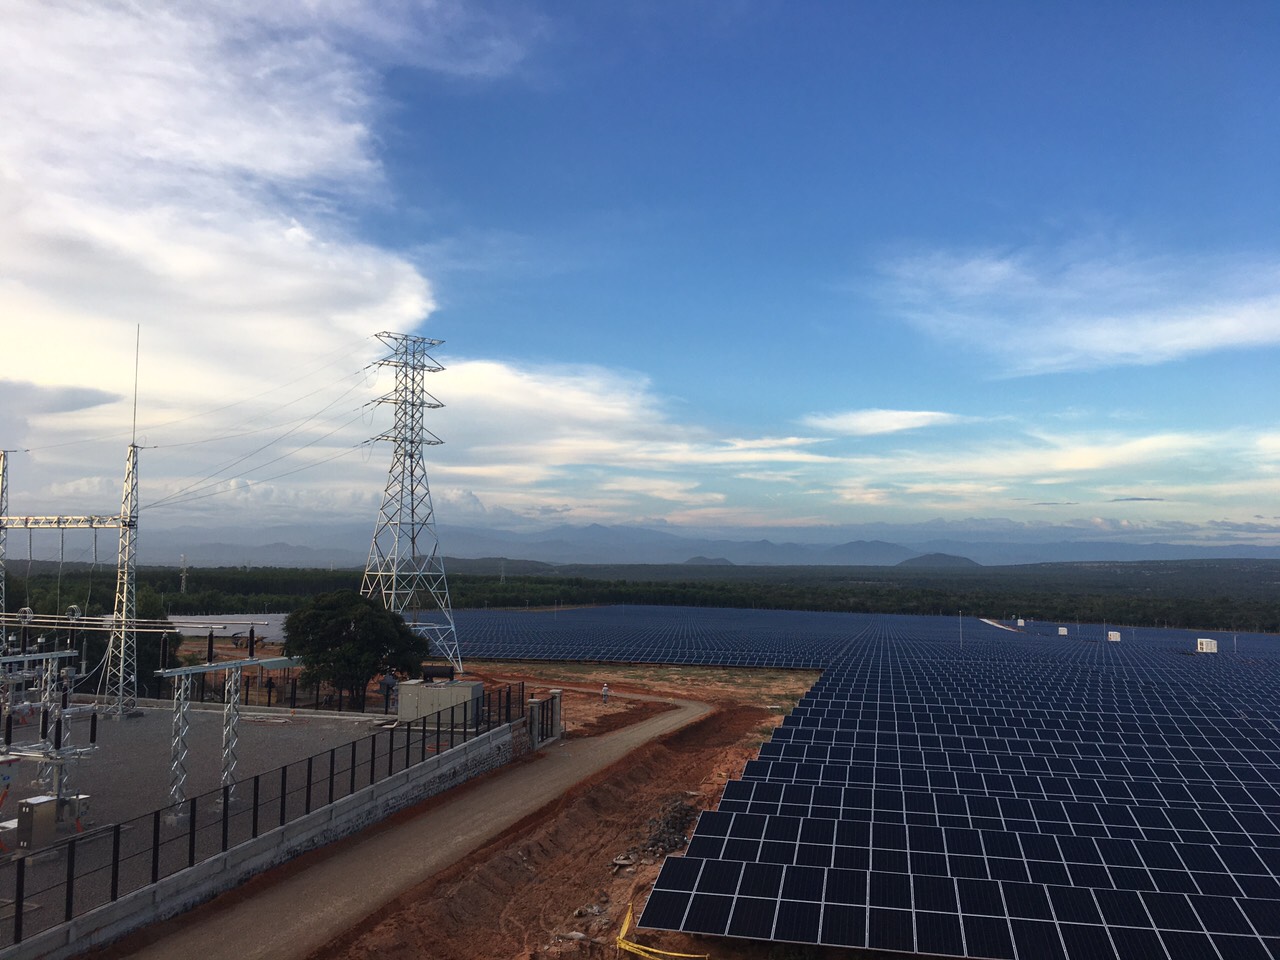 Hồng Phong 5.2 Solar Power Plant